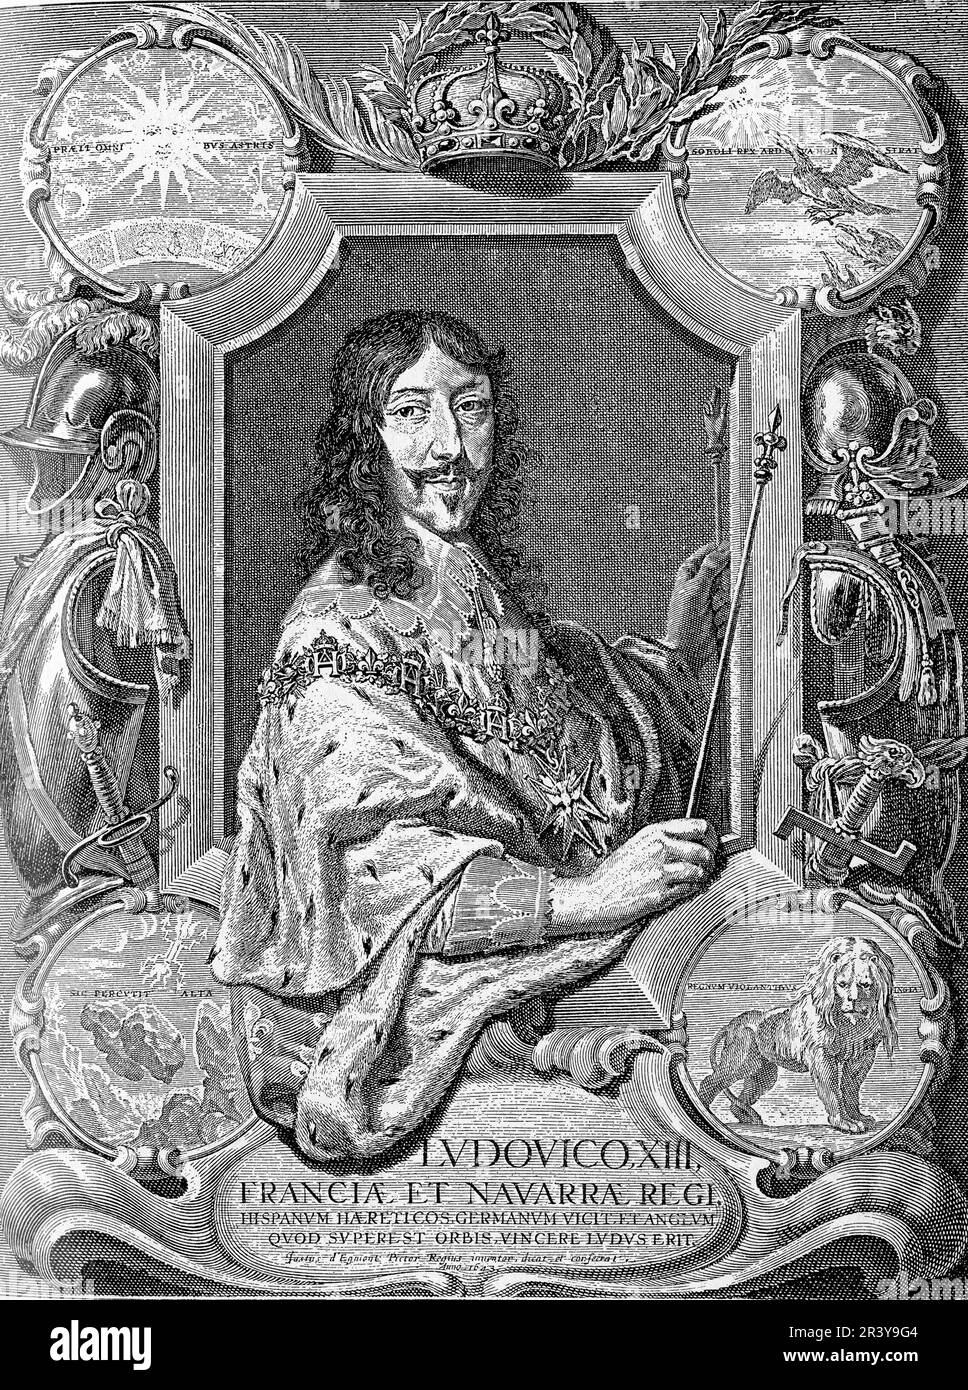 Luigi XIII fu un re francese del 17th° secolo che governò dal 1610 al 1643. Ereditò un regno lacerato da conflitti religiosi e politici e lottò per affermare la sua autorità. È ricordato per il suo patrocinio delle arti, per i suoi contributi allo sviluppo della marina francese e per la sua alleanza con Richelieu. Il suo regno vide anche significativi tumulti e ribellioni Foto Stock